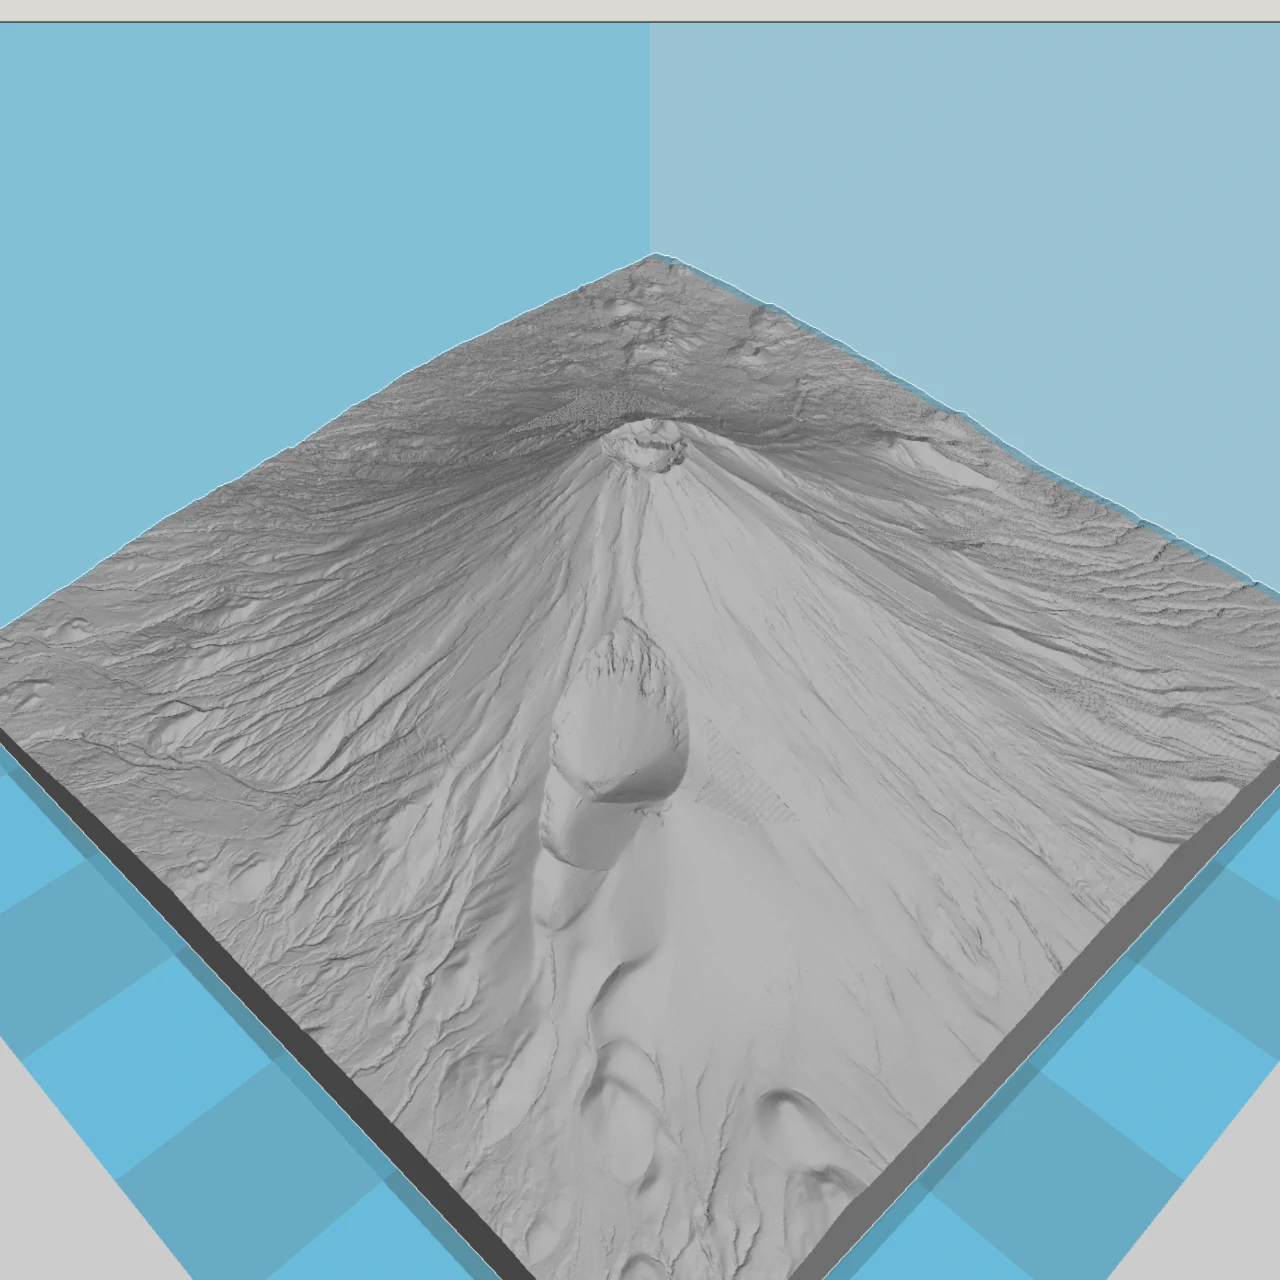 Modèle 3D du mont Fuji